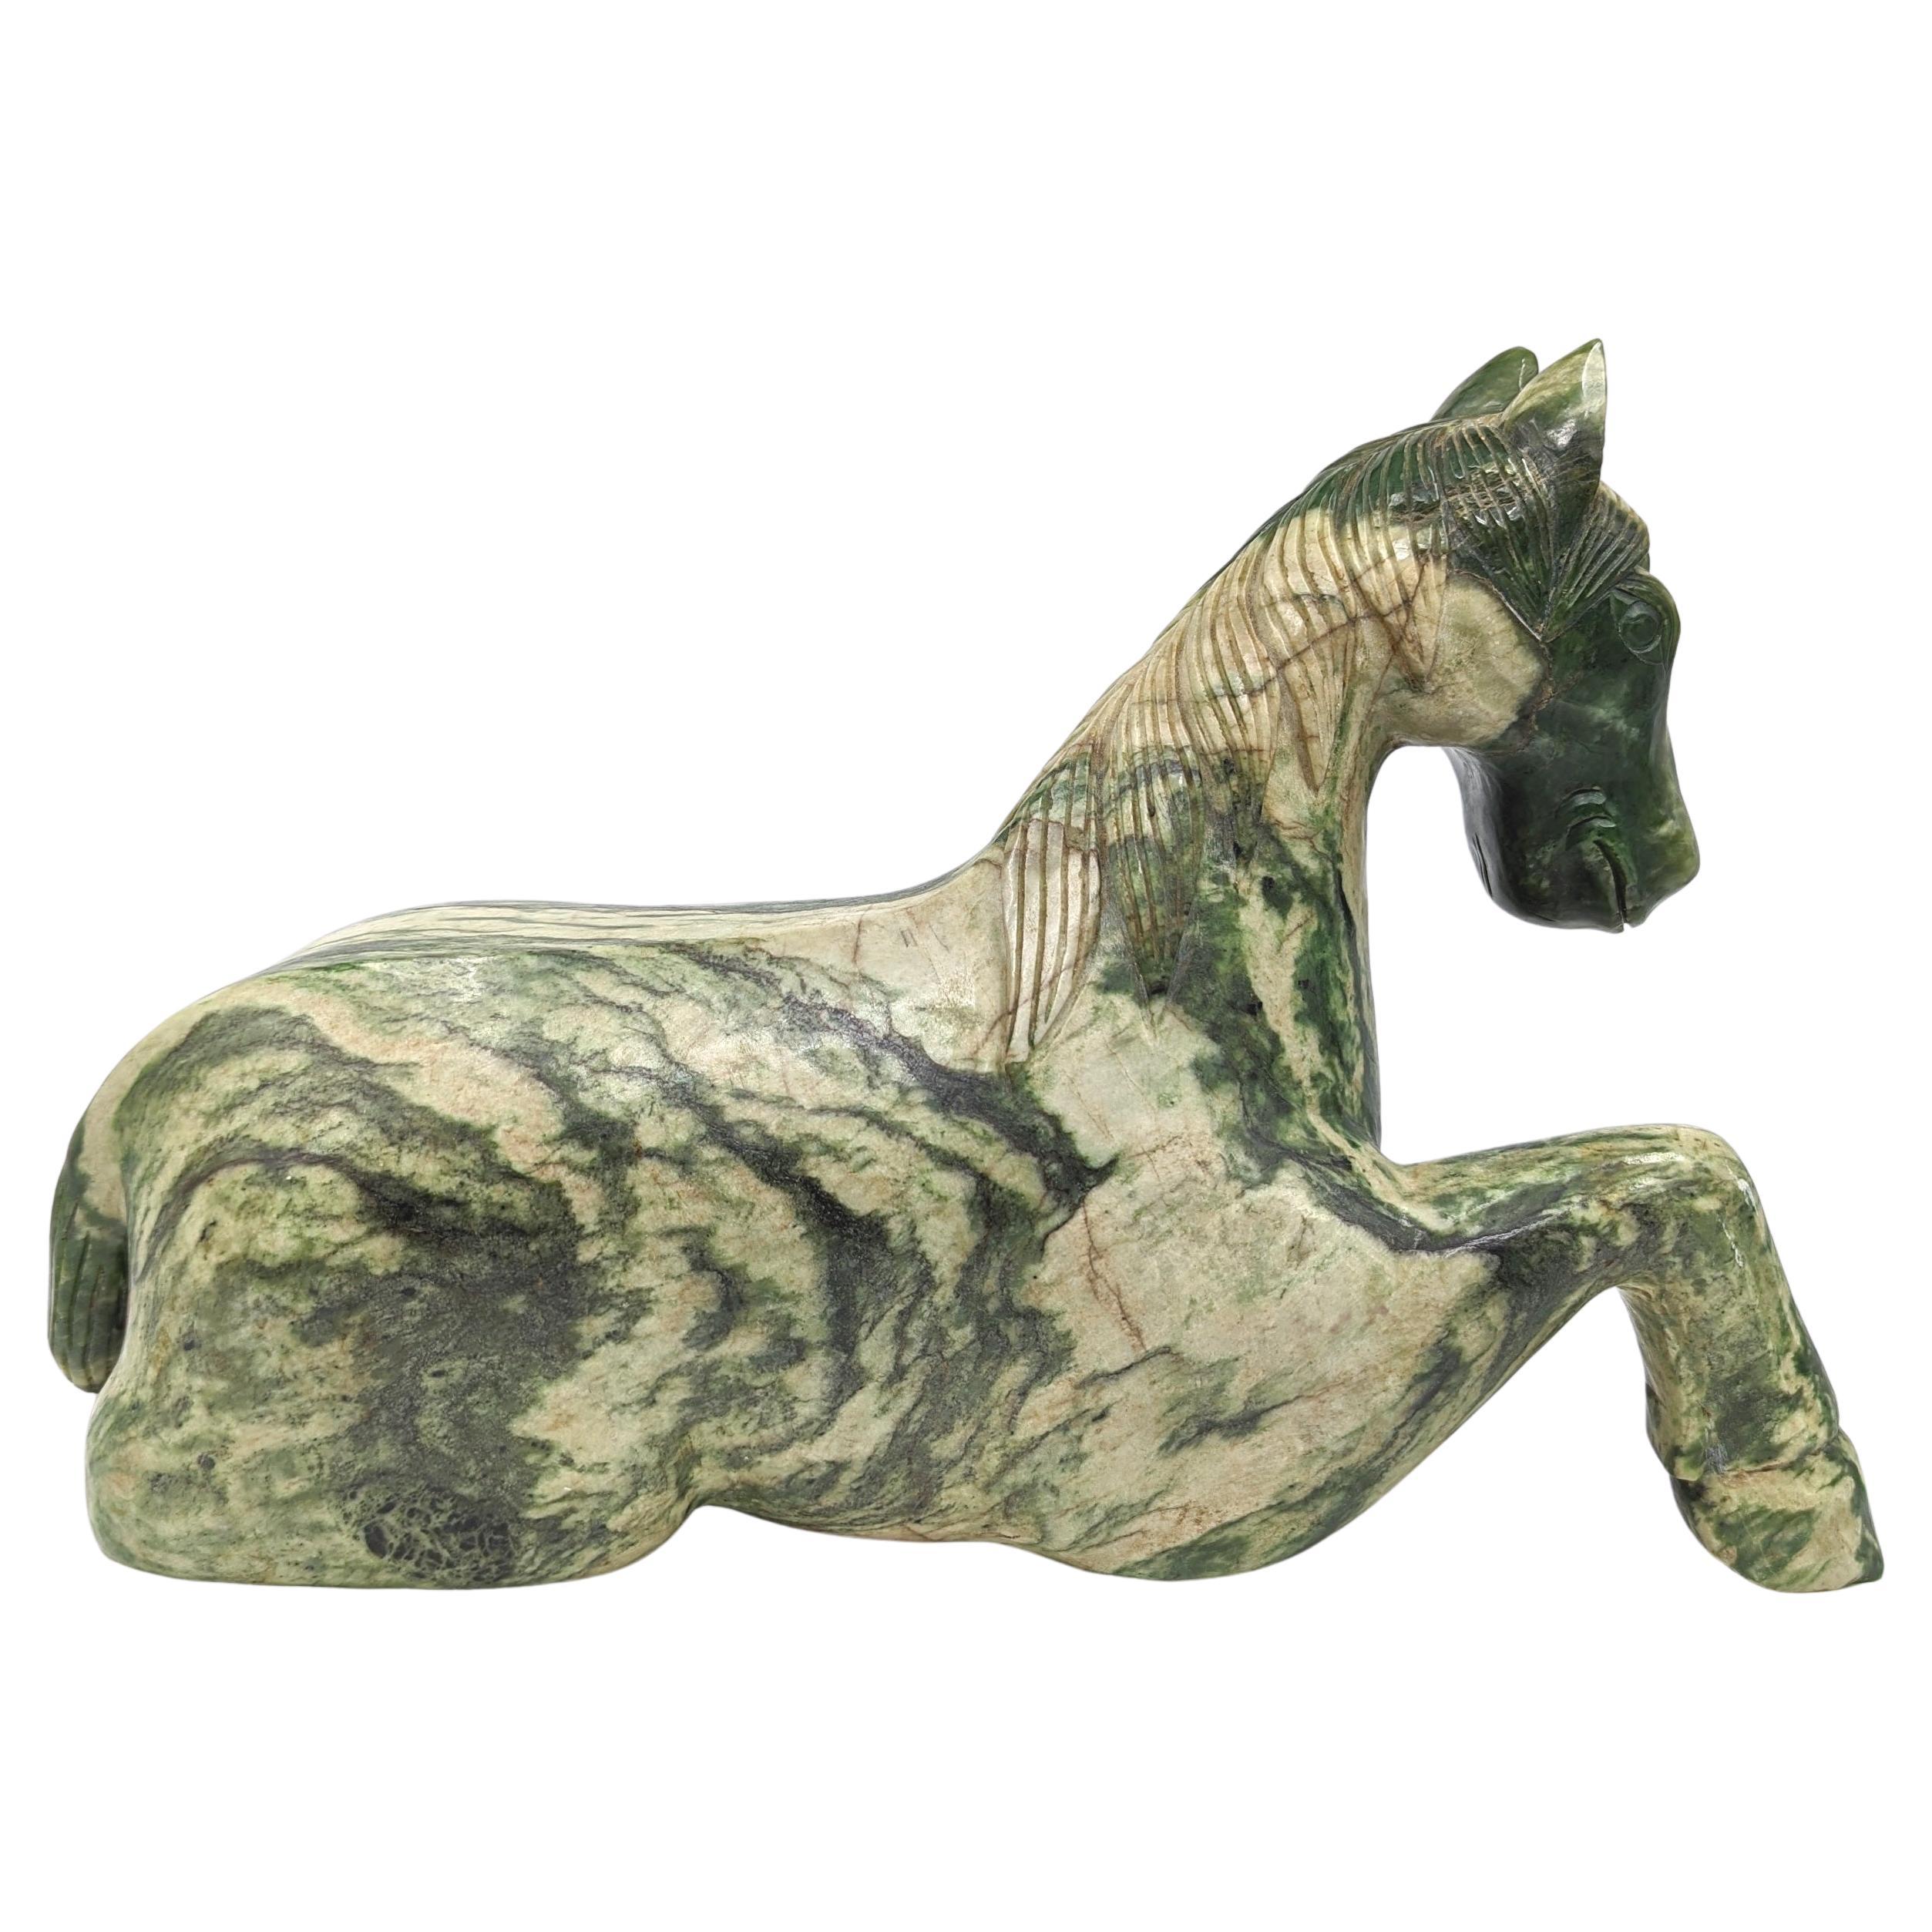 Ein monumentales (14 kg) chinesisches liegendes Tang-Pferd, Mitte bis Ende des 20. Jahrhunderts, möglicherweise älter. Die Skulptur ist aus Spinat-Jade gefertigt, einem Material, das wegen seines tiefgrünen Farbtons und seiner symbolischen Bedeutung